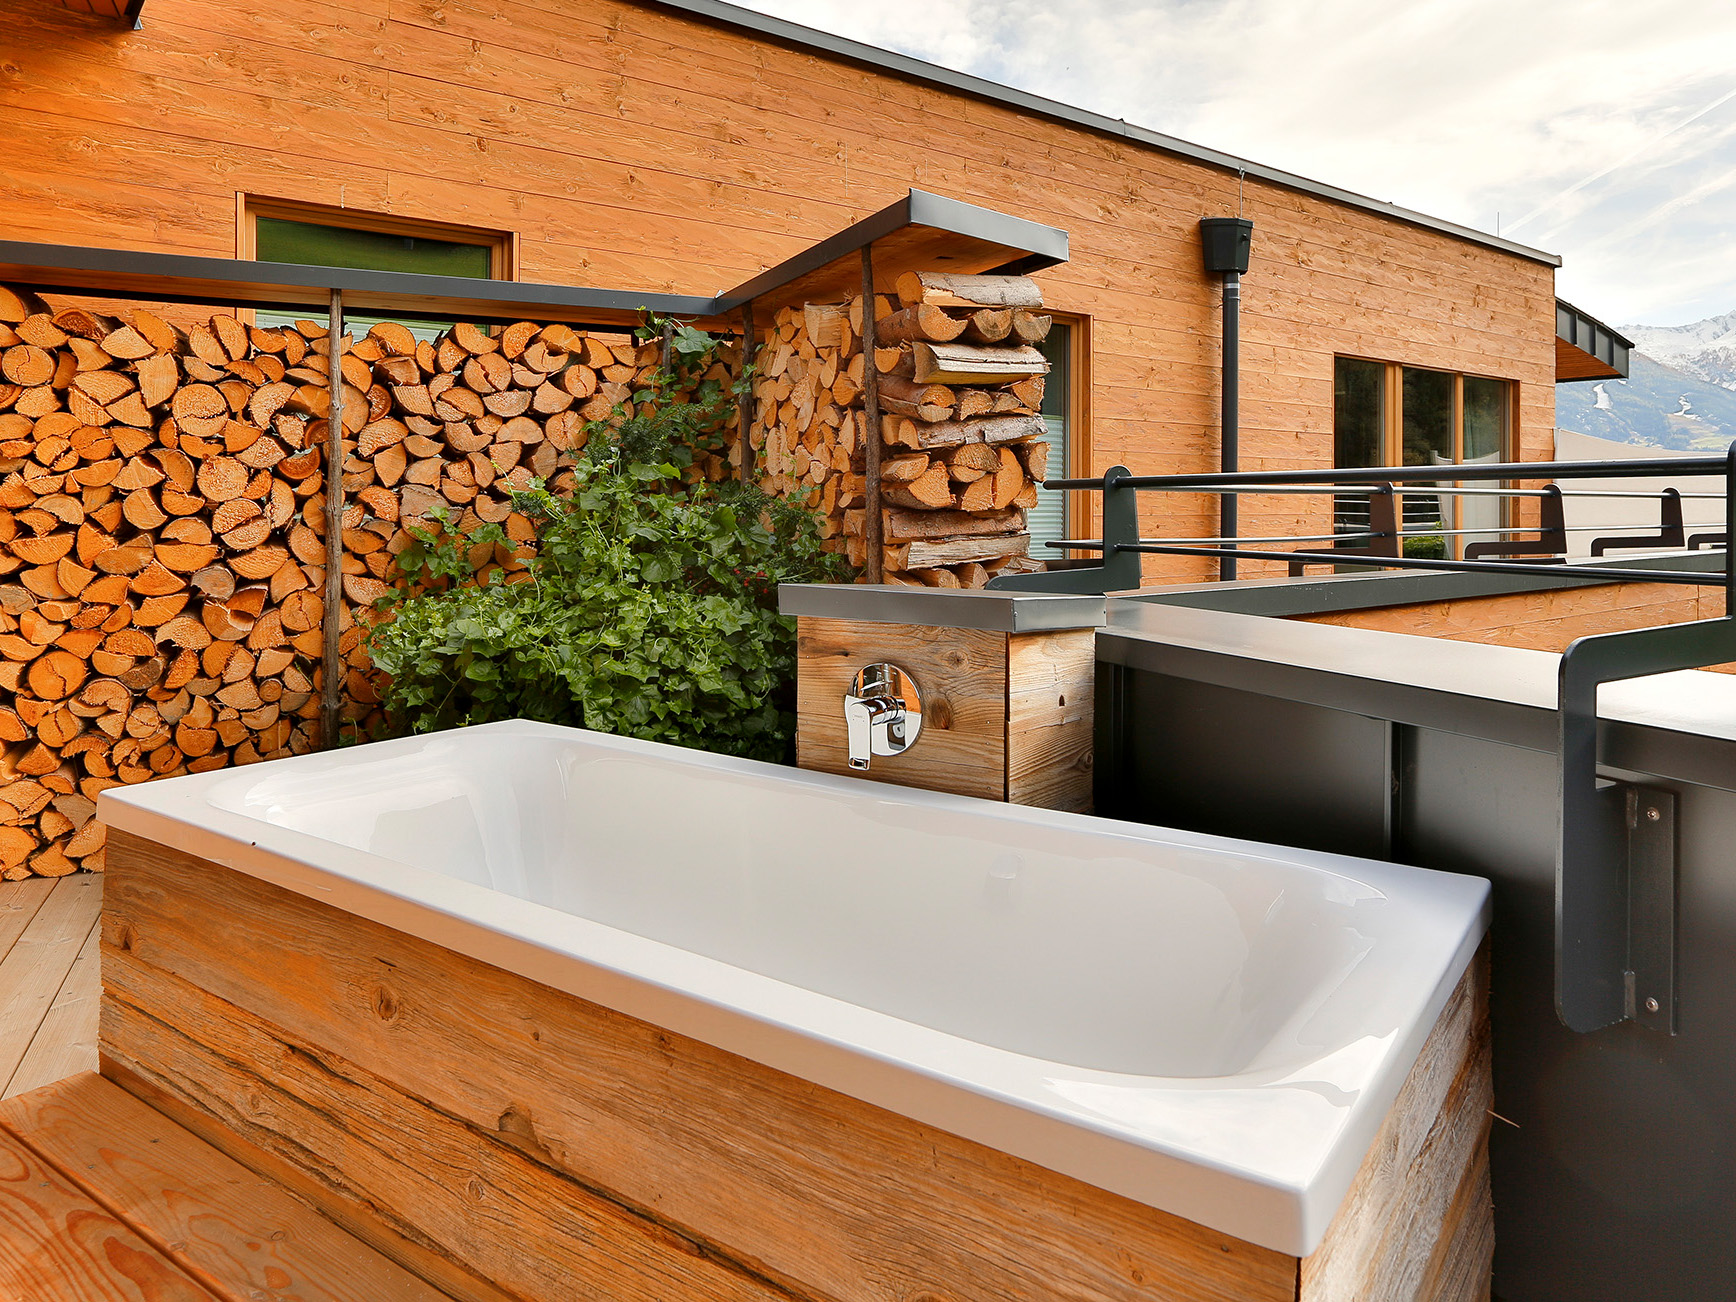 Das Badezimmer in Holzoptik